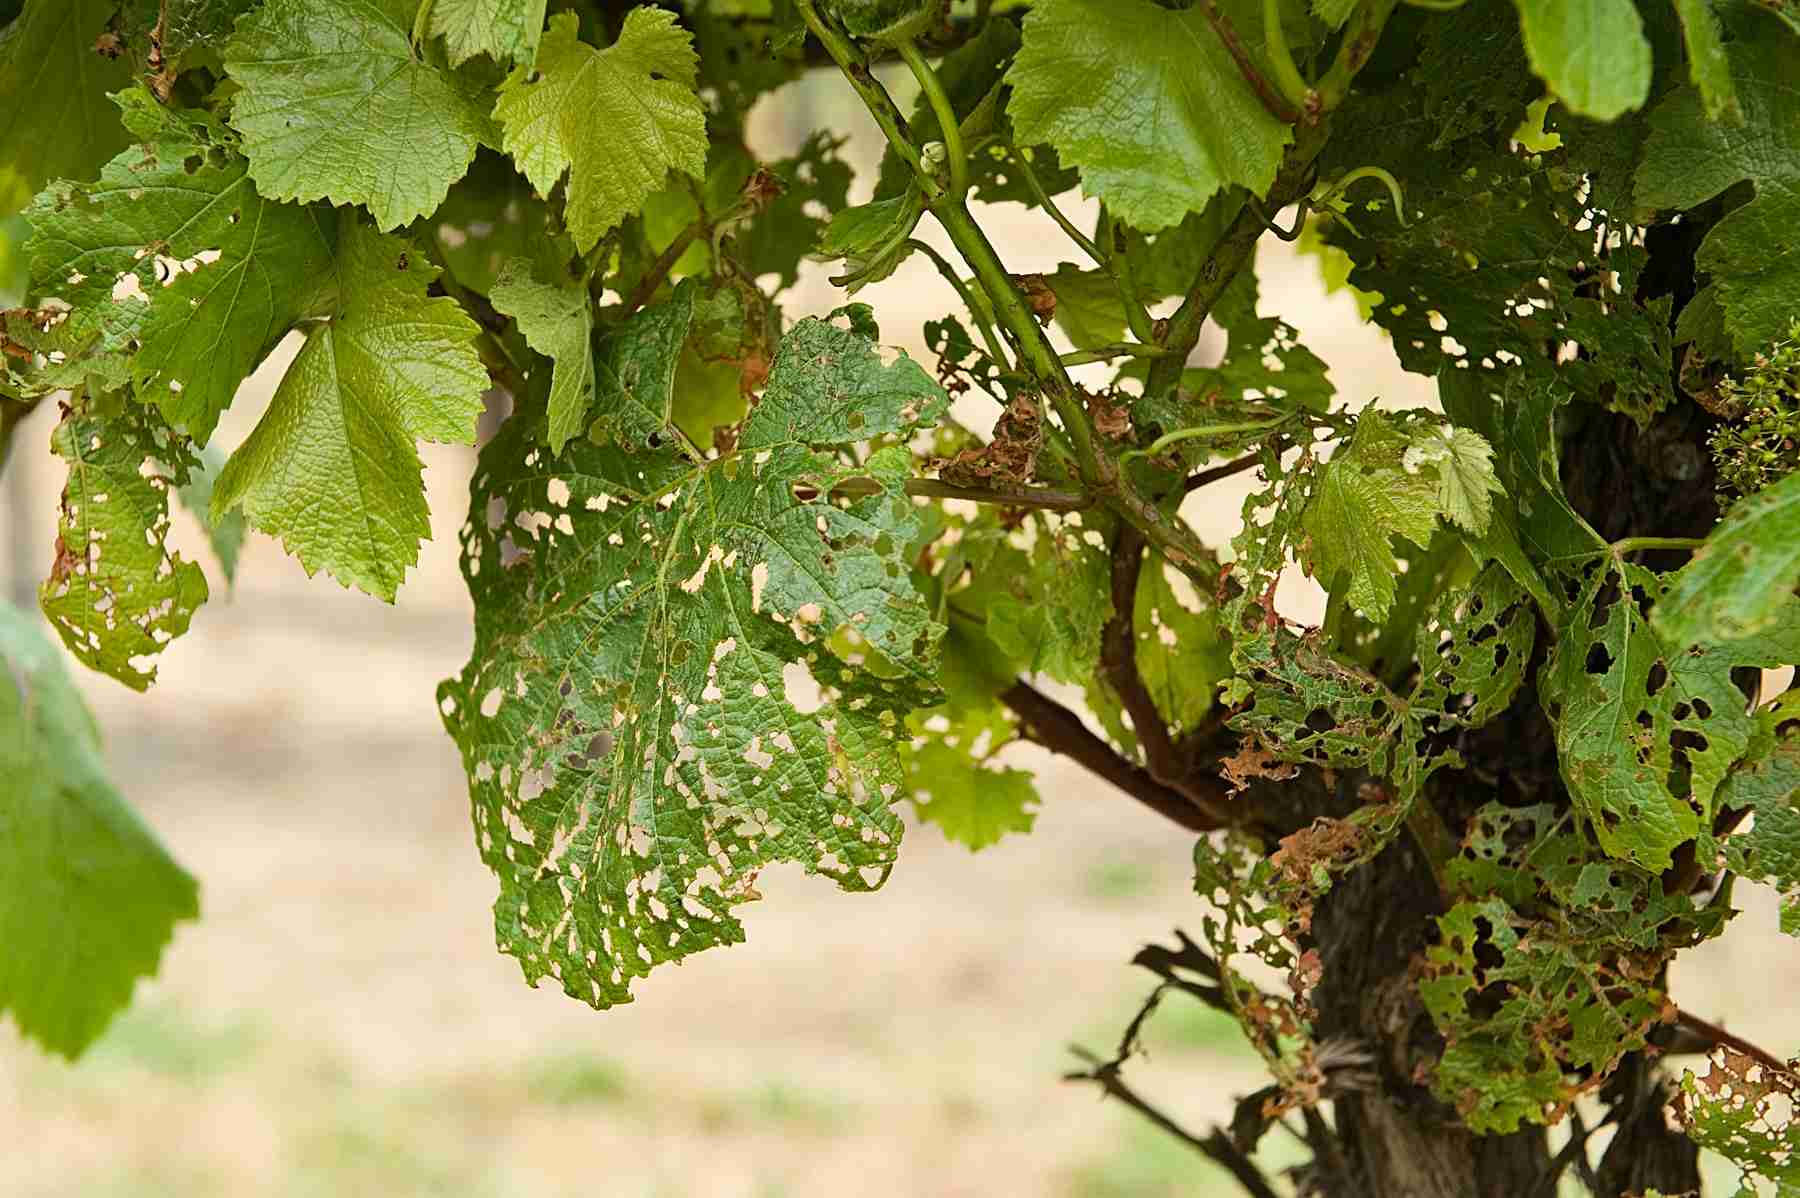 Причины филлоксеры на винограде, меры борьбы препаратами и народными средствами